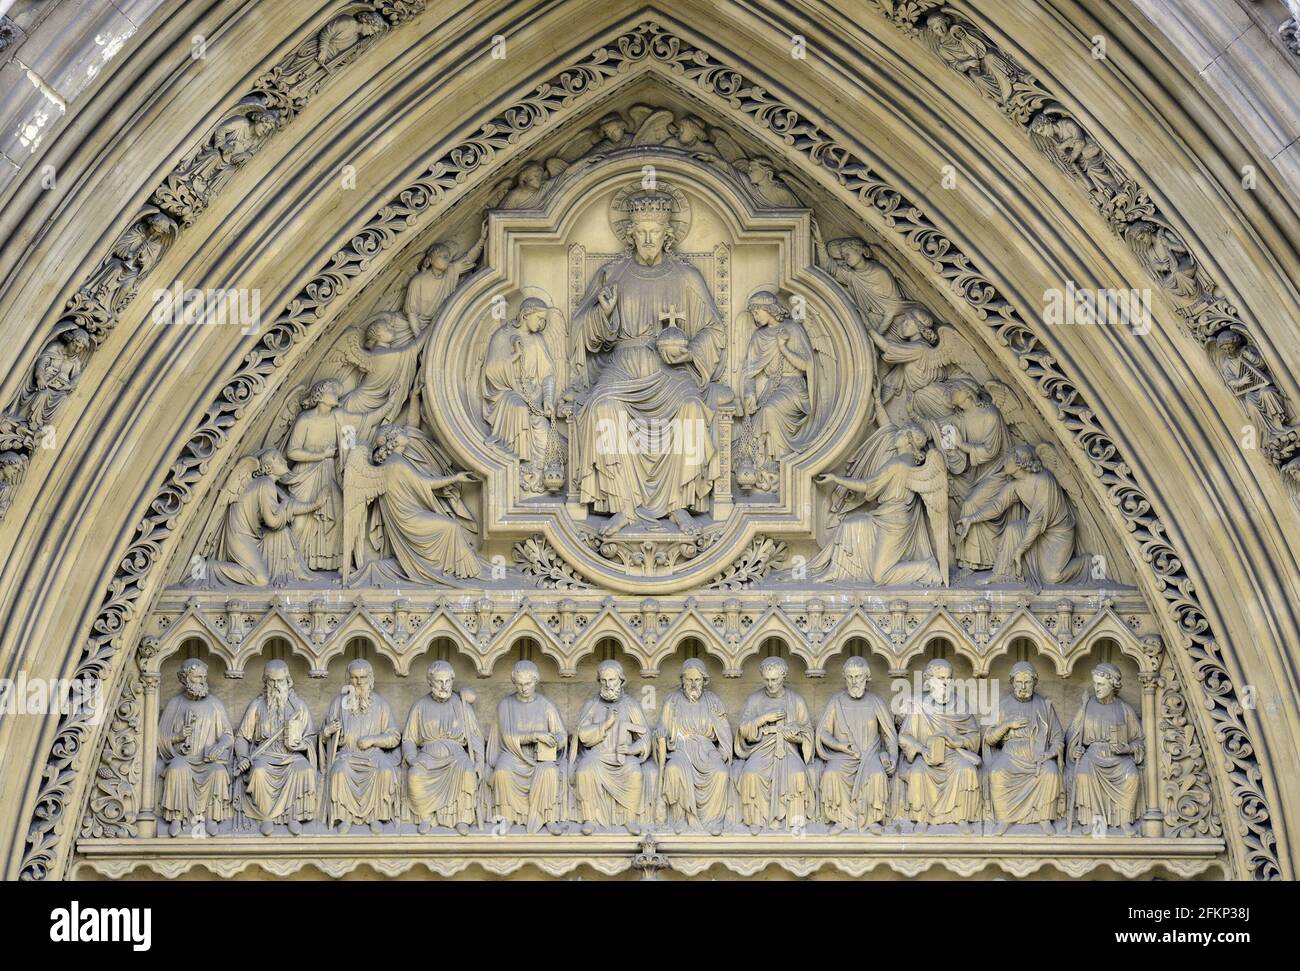 Londra, Inghilterra, Regno Unito. Abbazia di Westminster - timpano sopra la porta Nord raffigurante Cristo in Maestà, circondato da angeli con i 12 apostoli seduti b Foto Stock